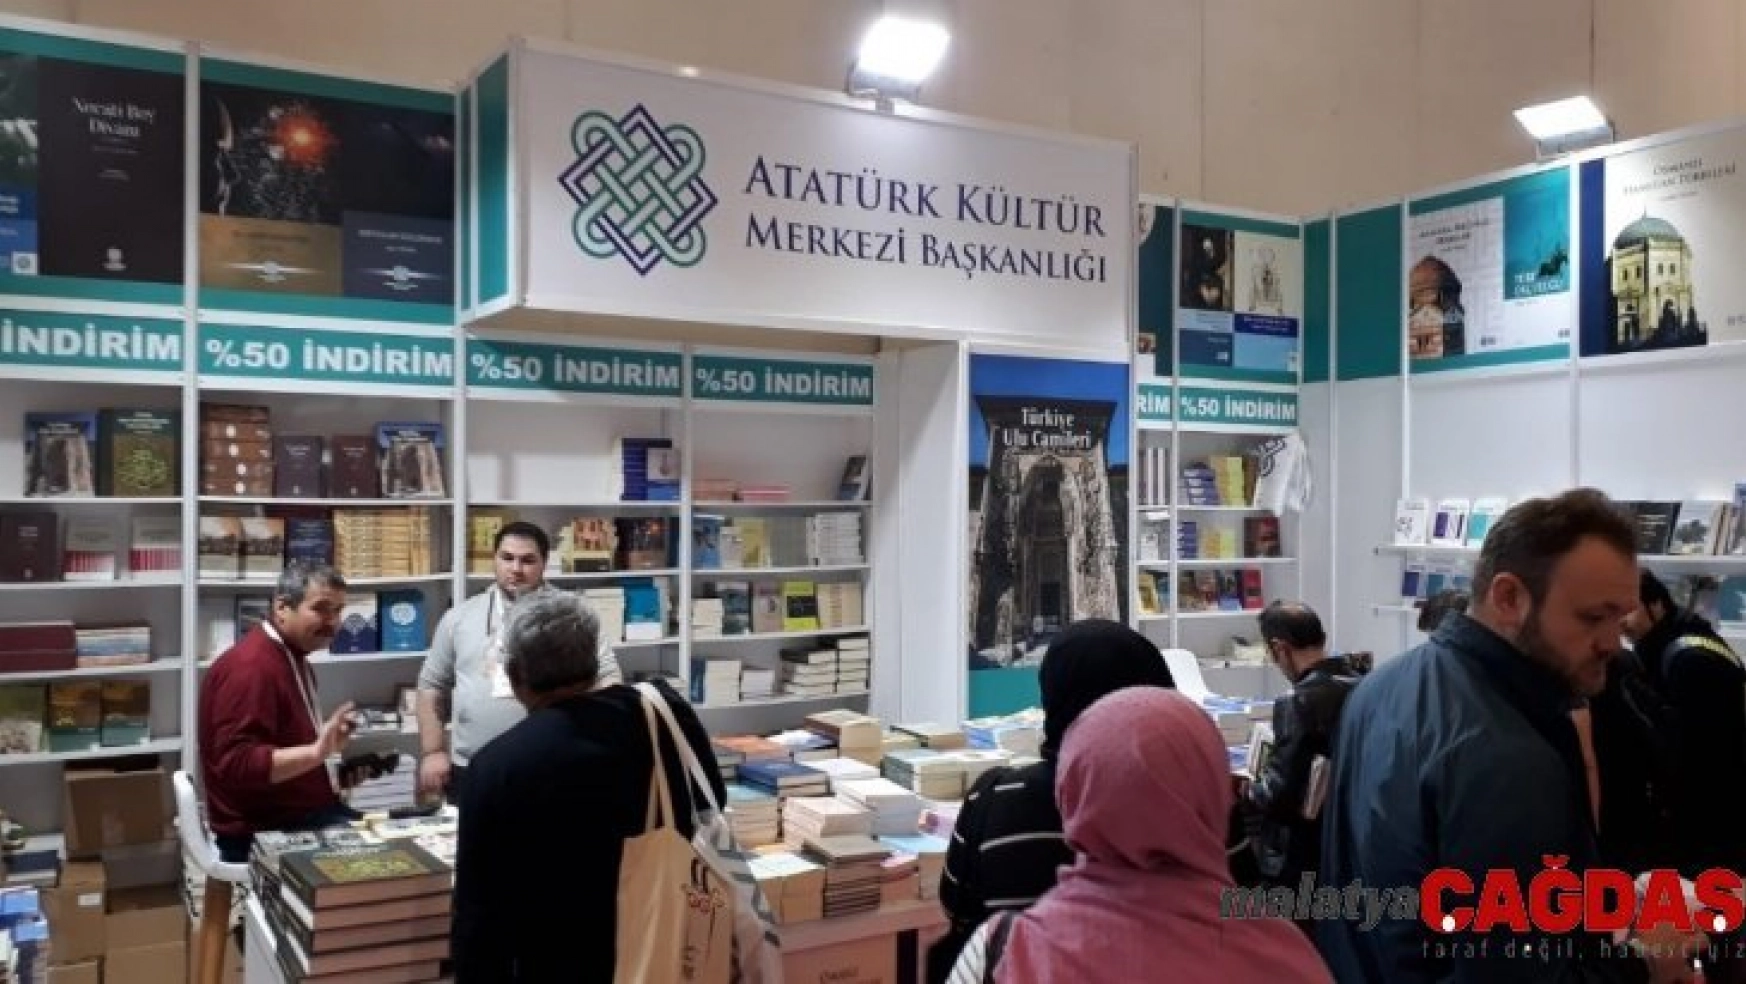 Atatürk Kültür Merkezi Başkanlığı 38. Uluslararası İstanbul Kitap Fuarı'nda